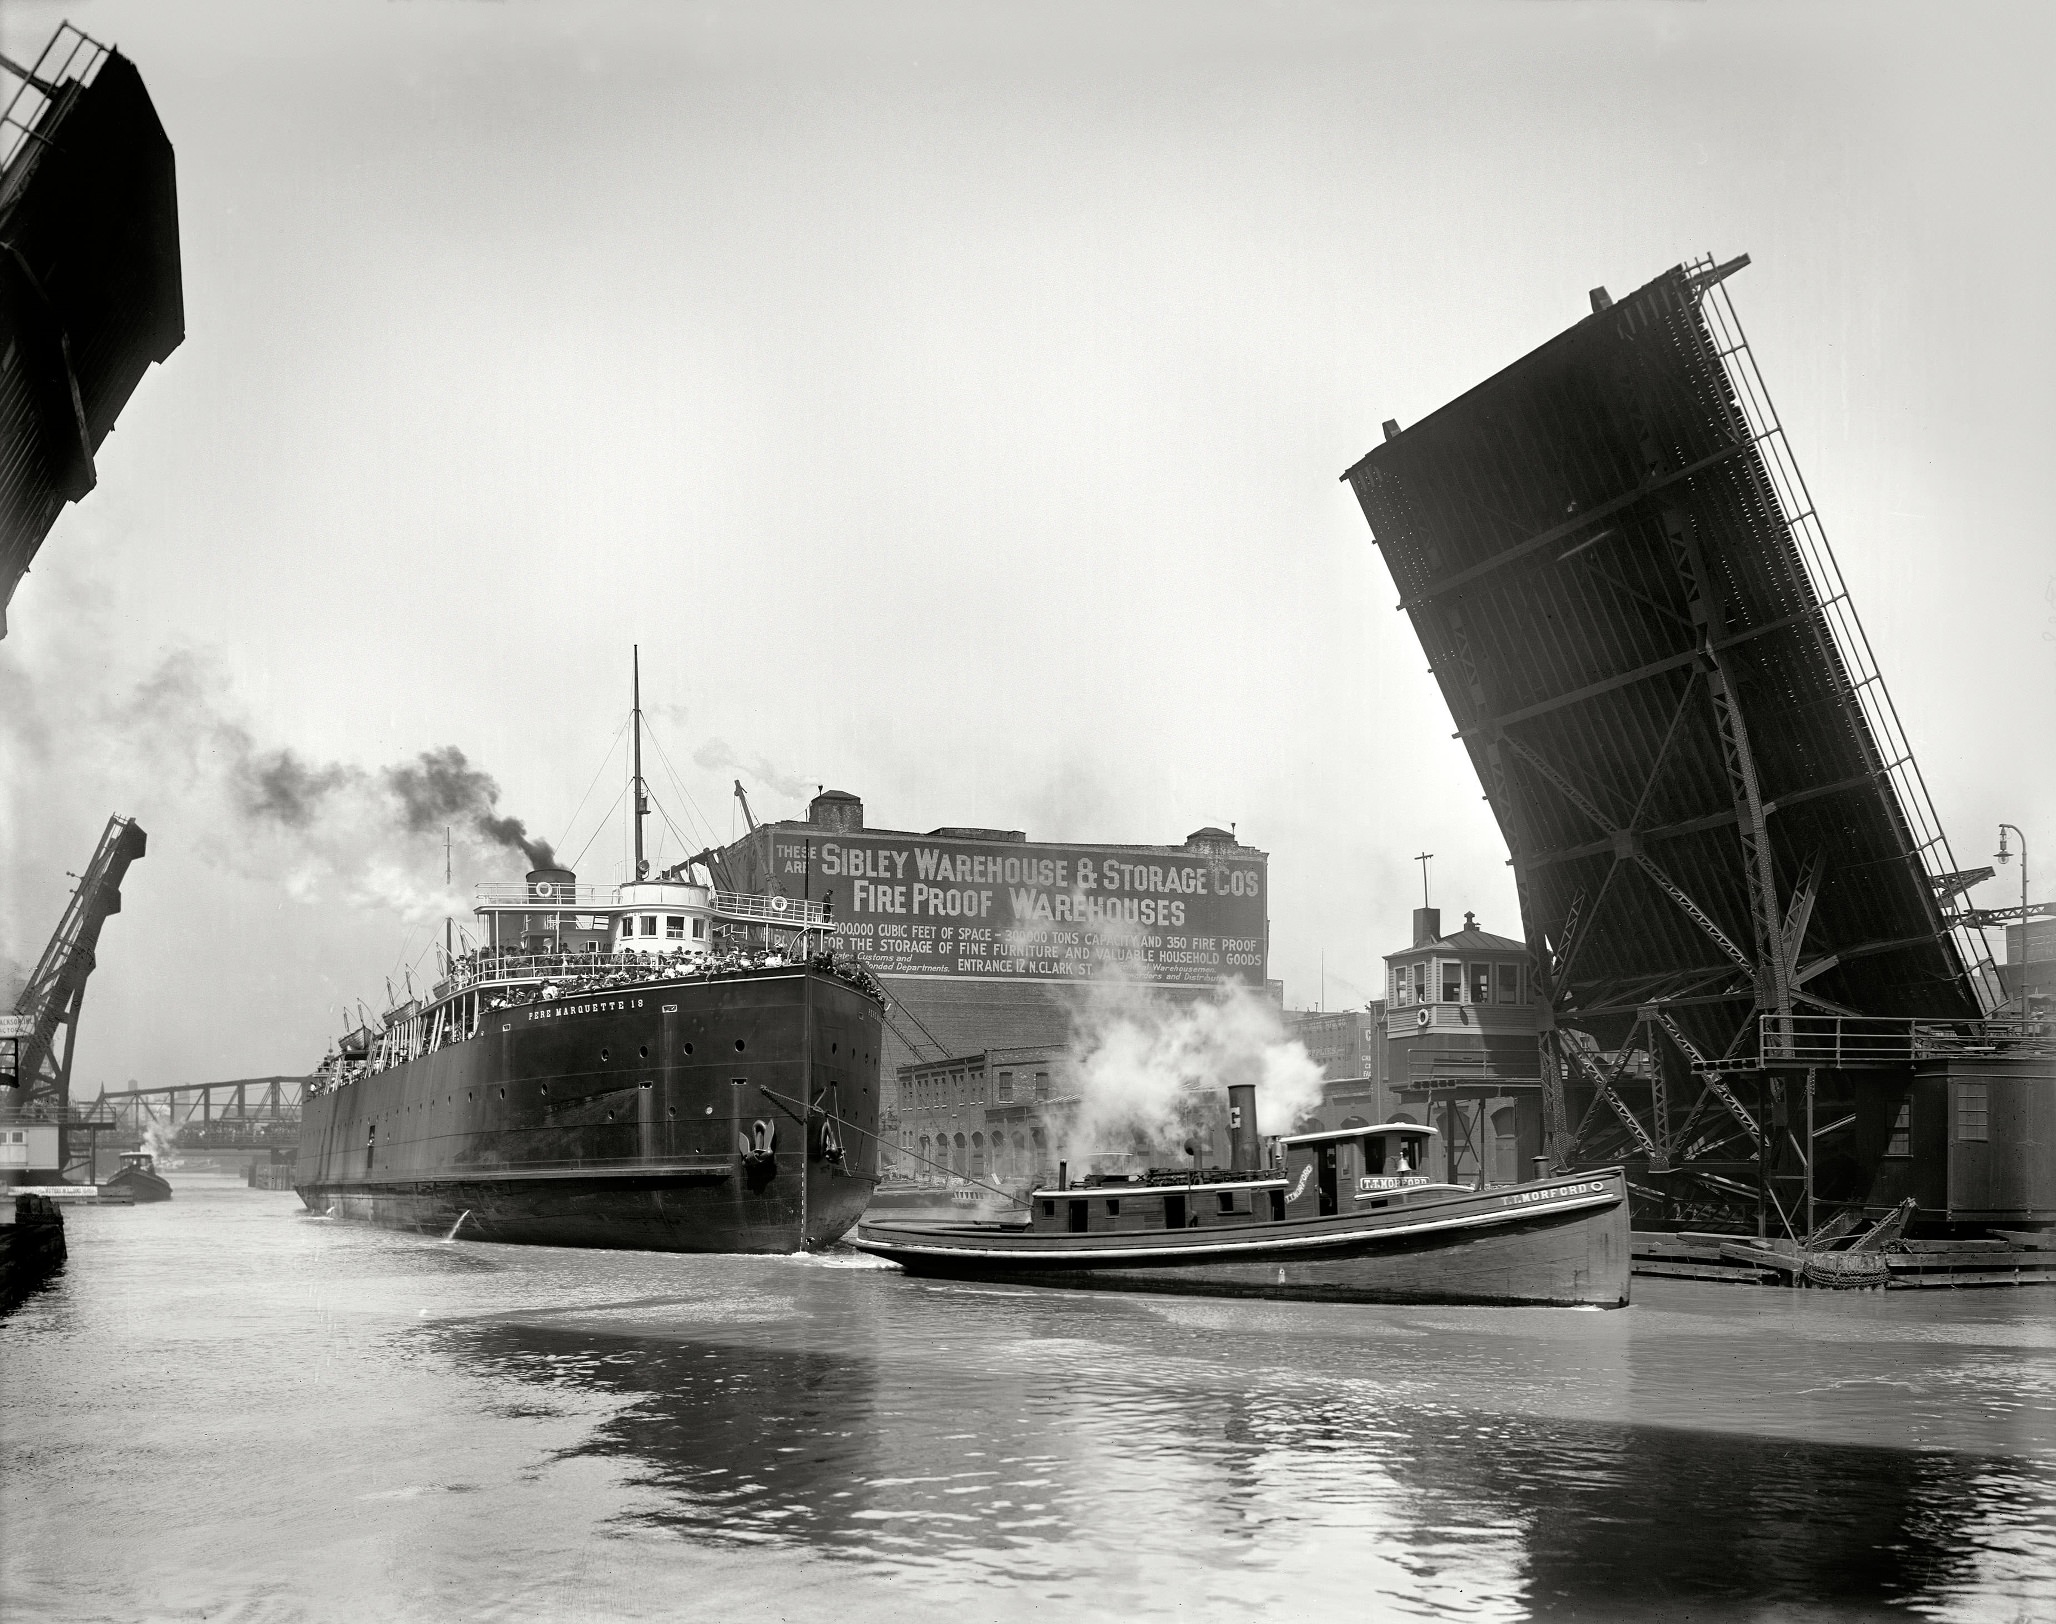 Pere Marquette transfer boat 18 passing State Street bridge, The Chicago River circa 1910